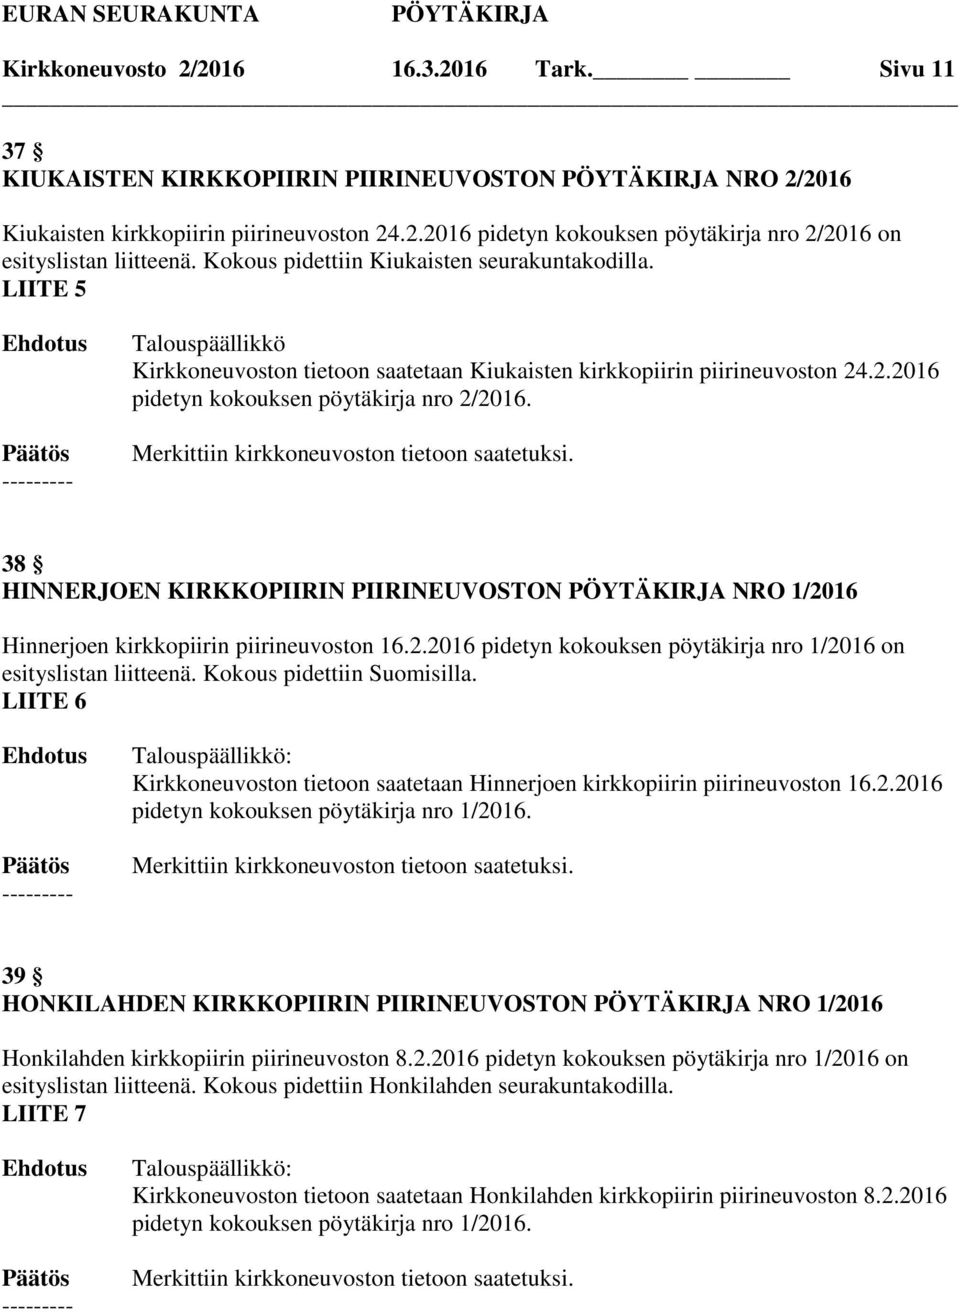 38 HINNERJOEN KIRKKOPIIRIN PIIRINEUVOSTON NRO 1/2016 Hinnerjoen kirkkopiirin piirineuvoston 16.2.2016 pidetyn kokouksen pöytäkirja nro 1/2016 on esityslistan liitteenä. Kokous pidettiin Suomisilla.